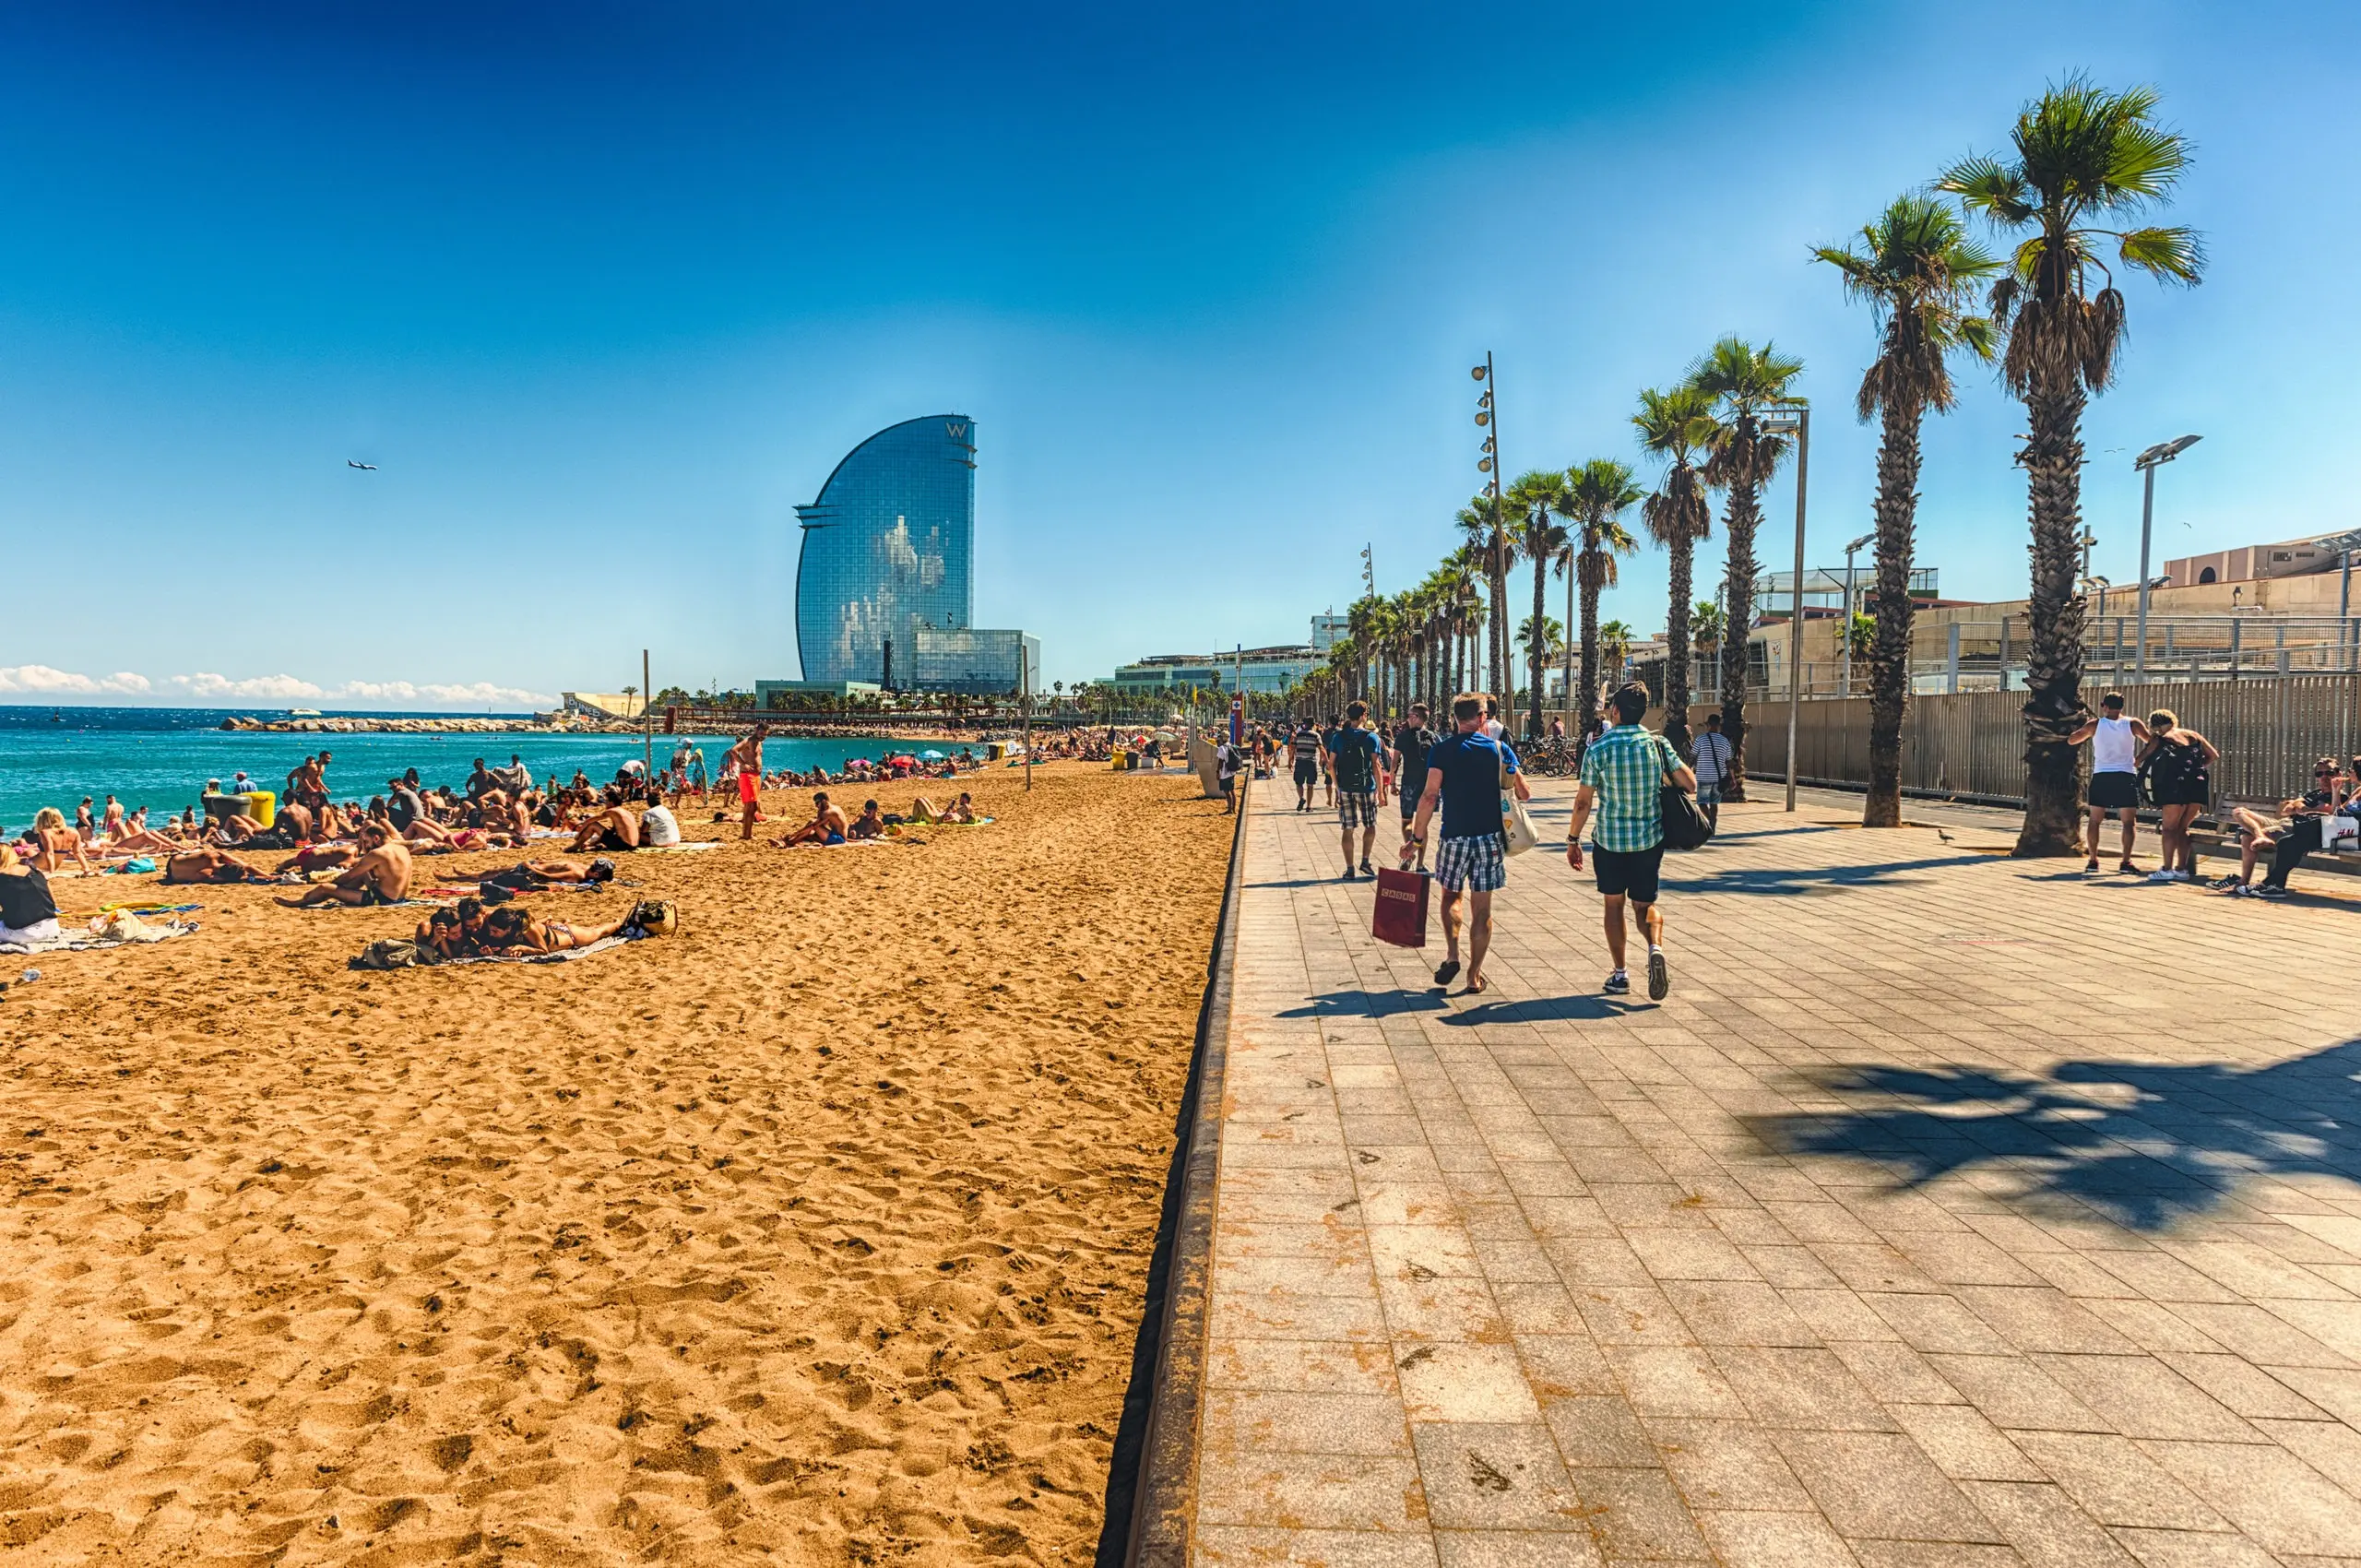 turismo en barcelona